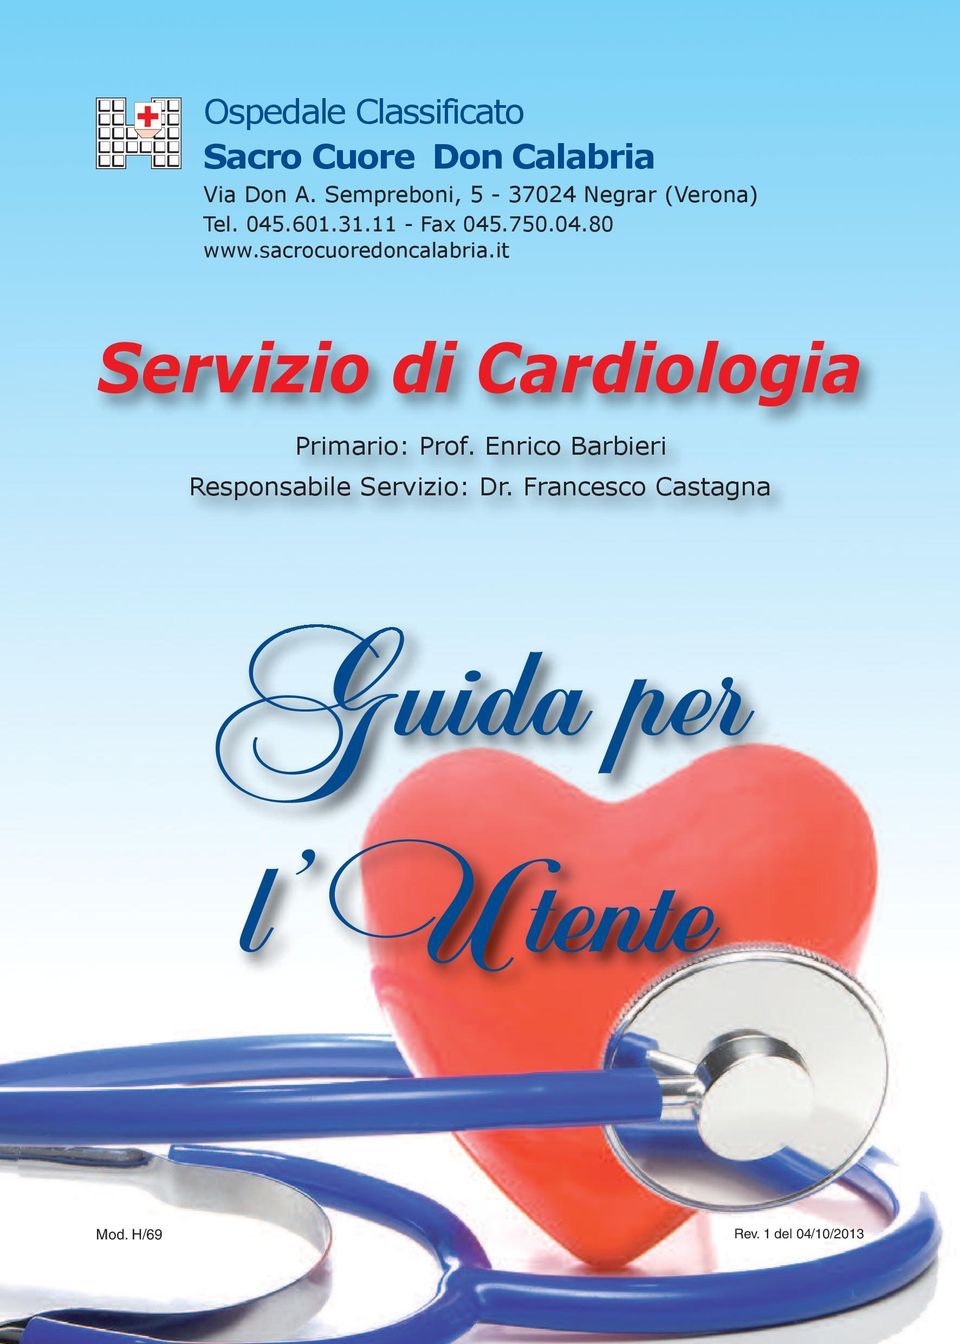 sacrocuoredoncalabria.it Servizio di Cardiologia Primario: Prof.